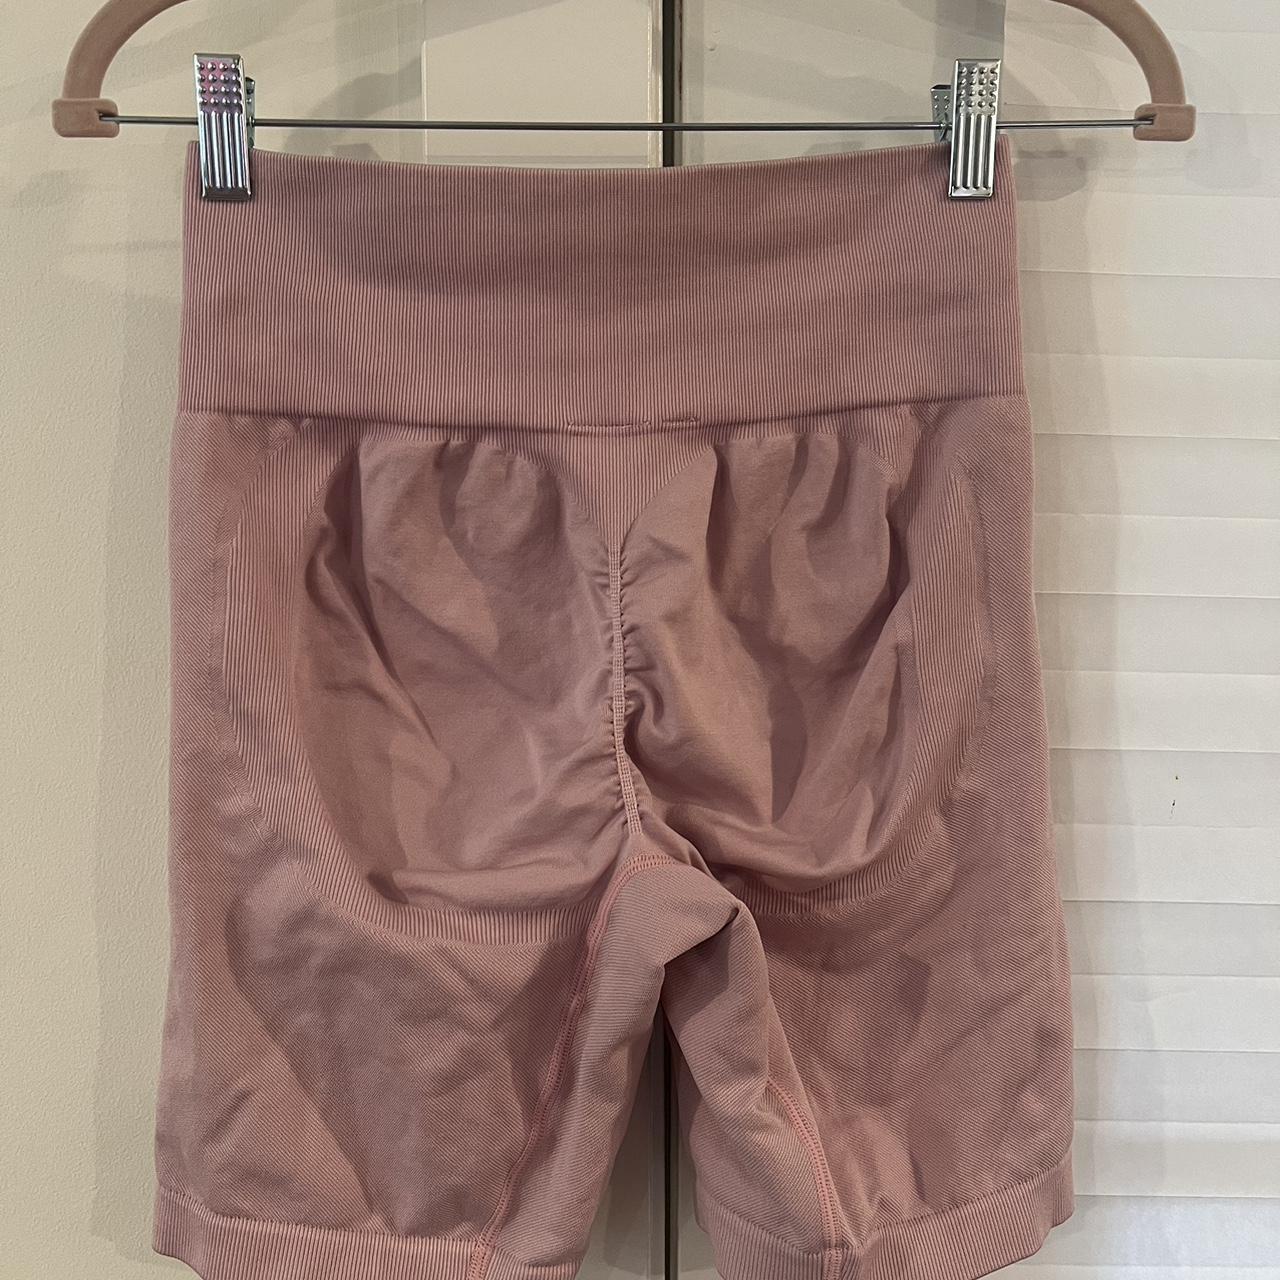 Bo + Tee Pink Butt Scrunch Shorts - $16 - From Pandora